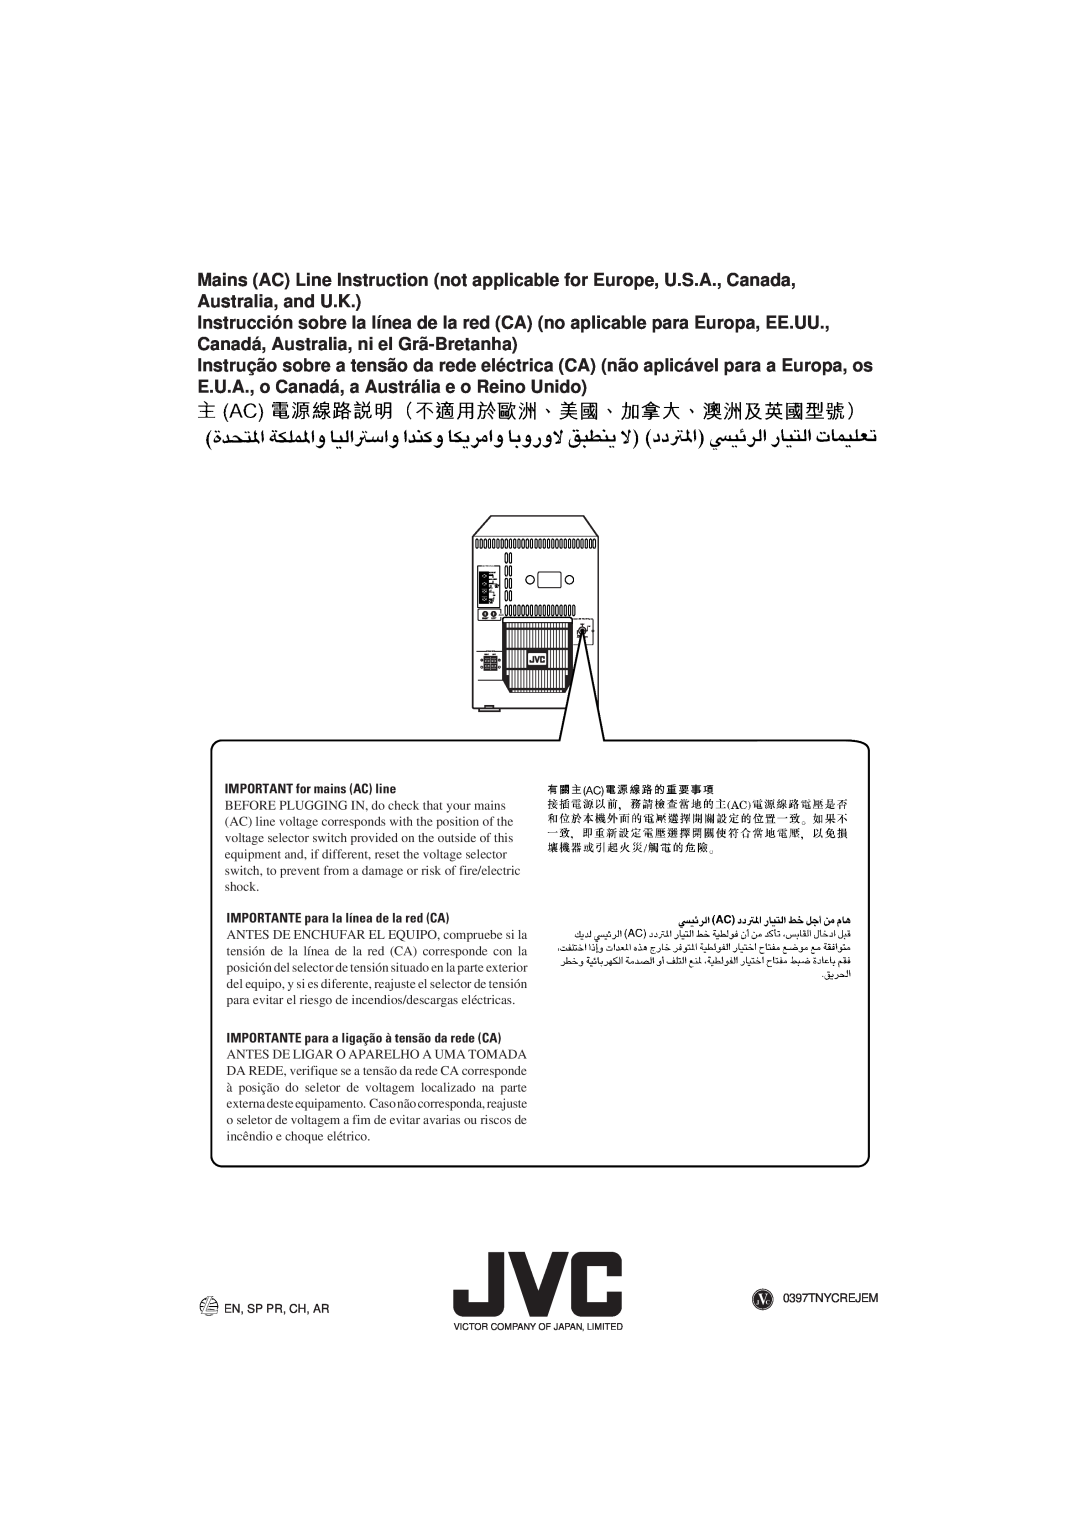 JVC MX-D301T, MX-D401T, CA-D501T manual IMPORTANT for mains AC line, IMPORTANTE para la línea de la red CA 